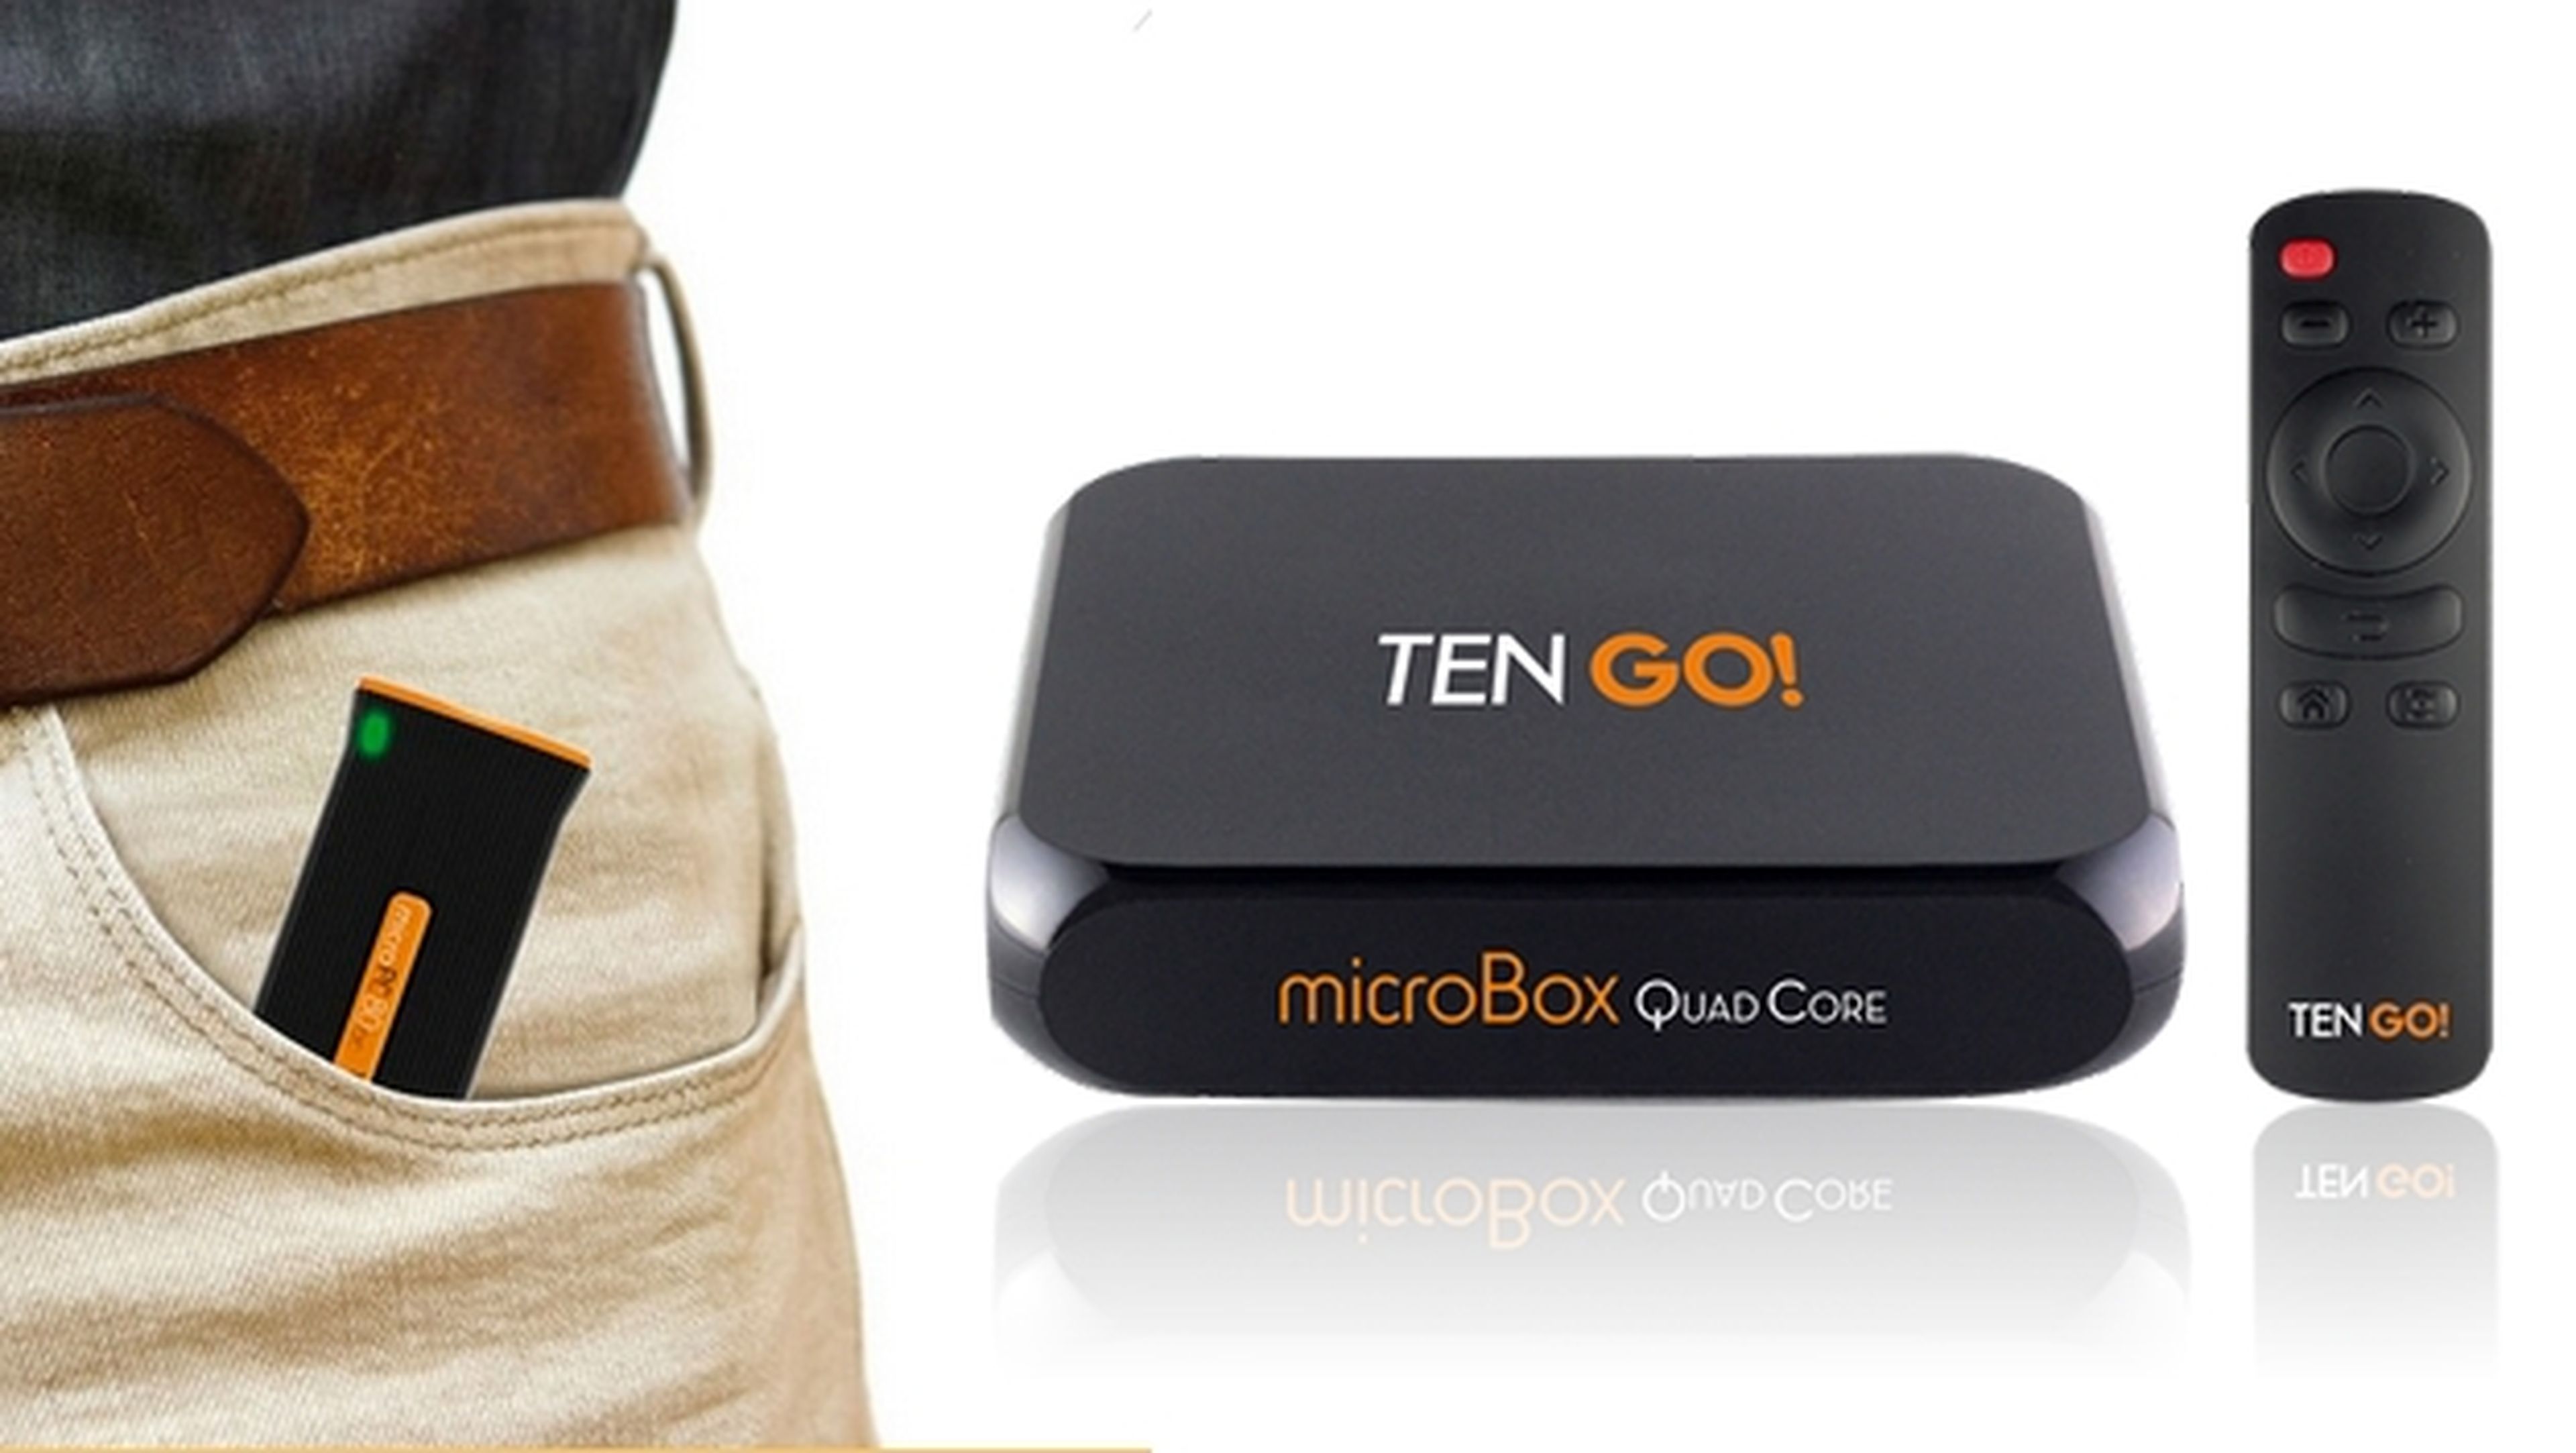 Llegan los nuevos Android TV de TenGO!, microBox Quad Core y microPC 80QC con chips de cuatro núcleos